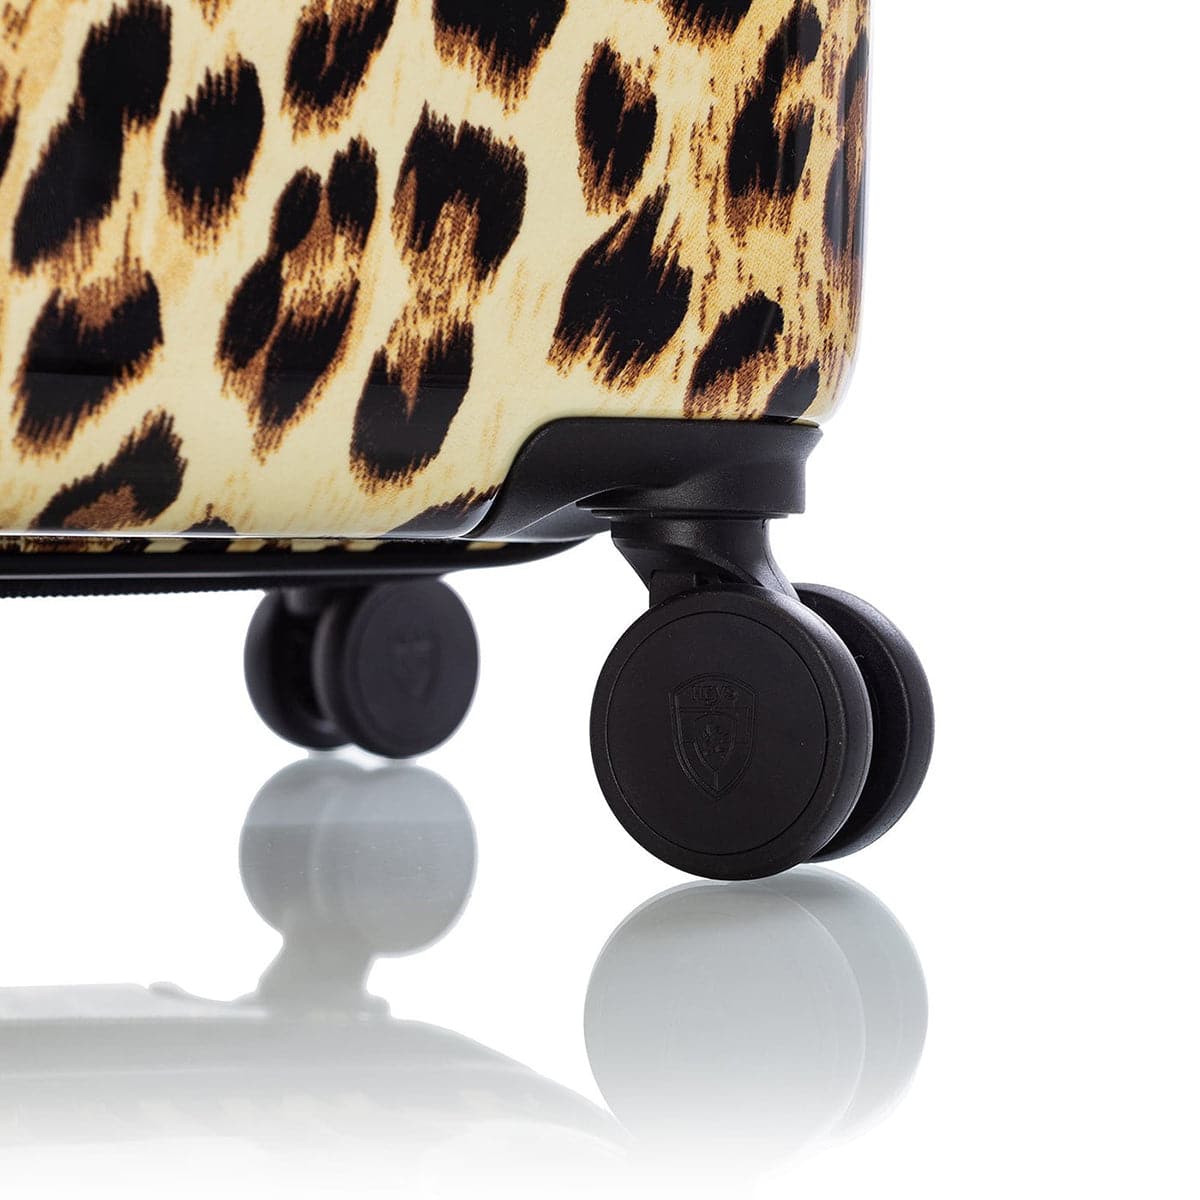 Heys 30" Leopard Fashion Spinner Luggage